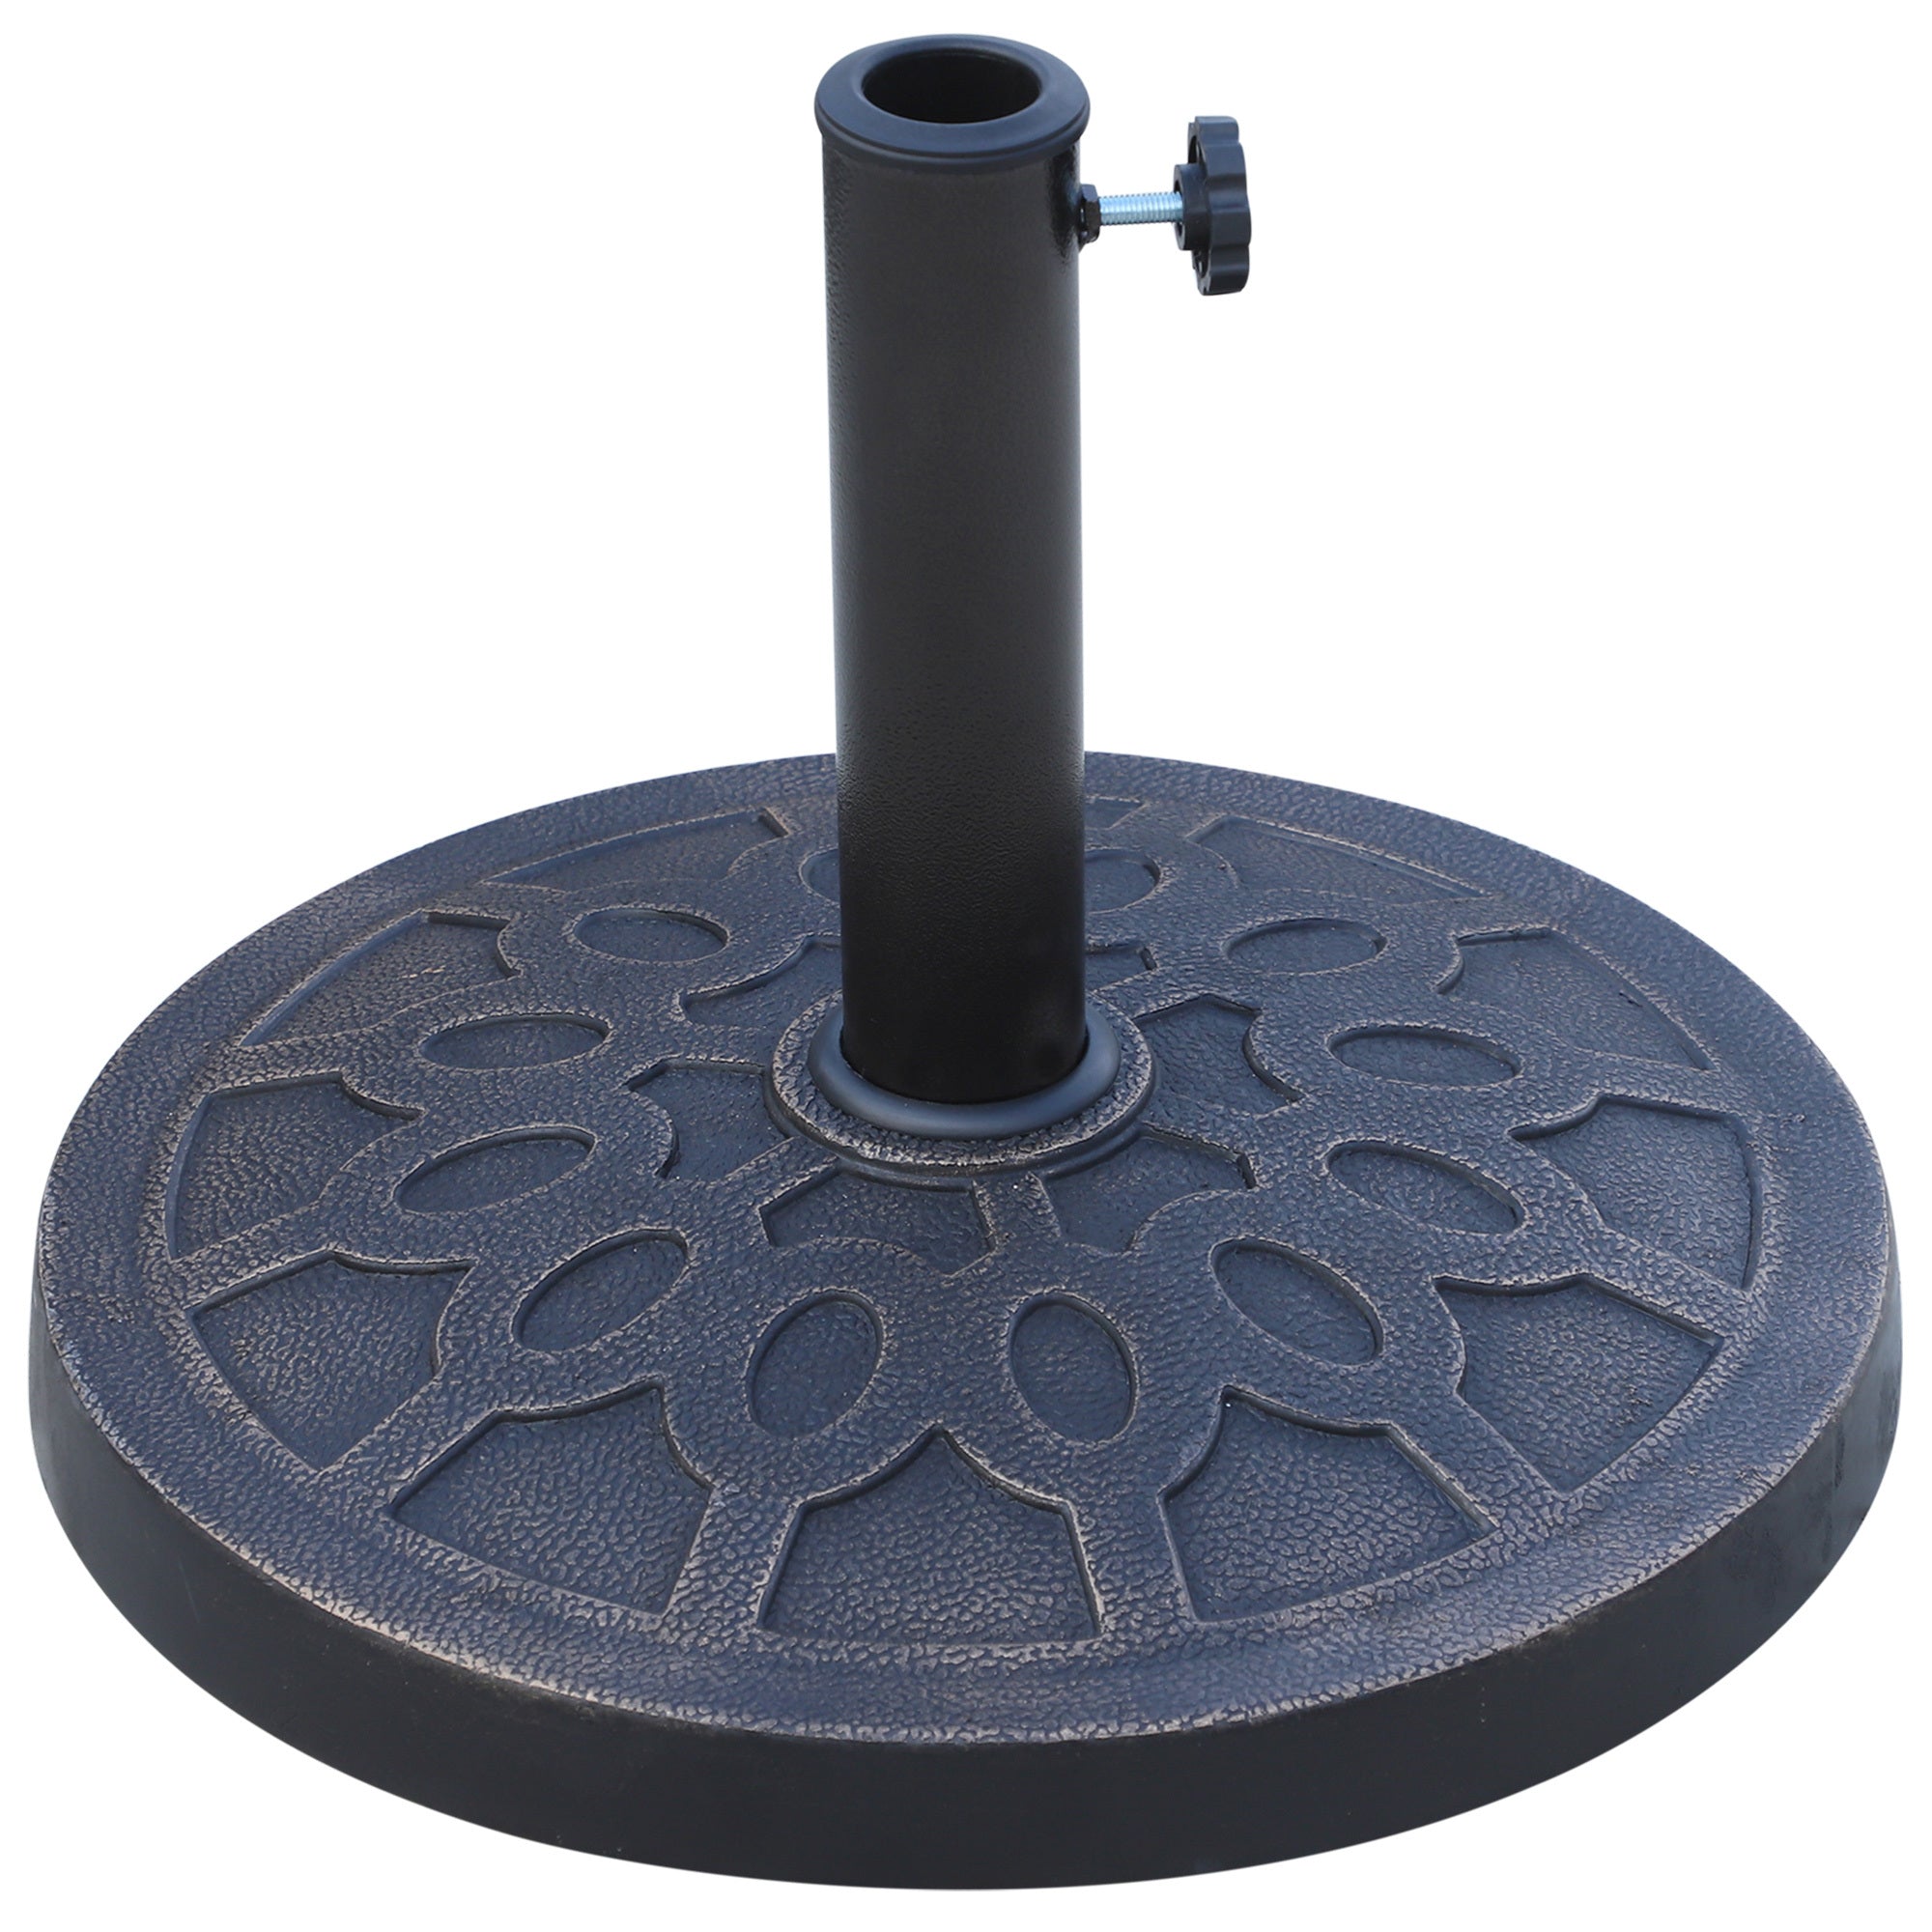 18" 26 lbs Round Resin Umbrella Base Stand Market bronze-steel